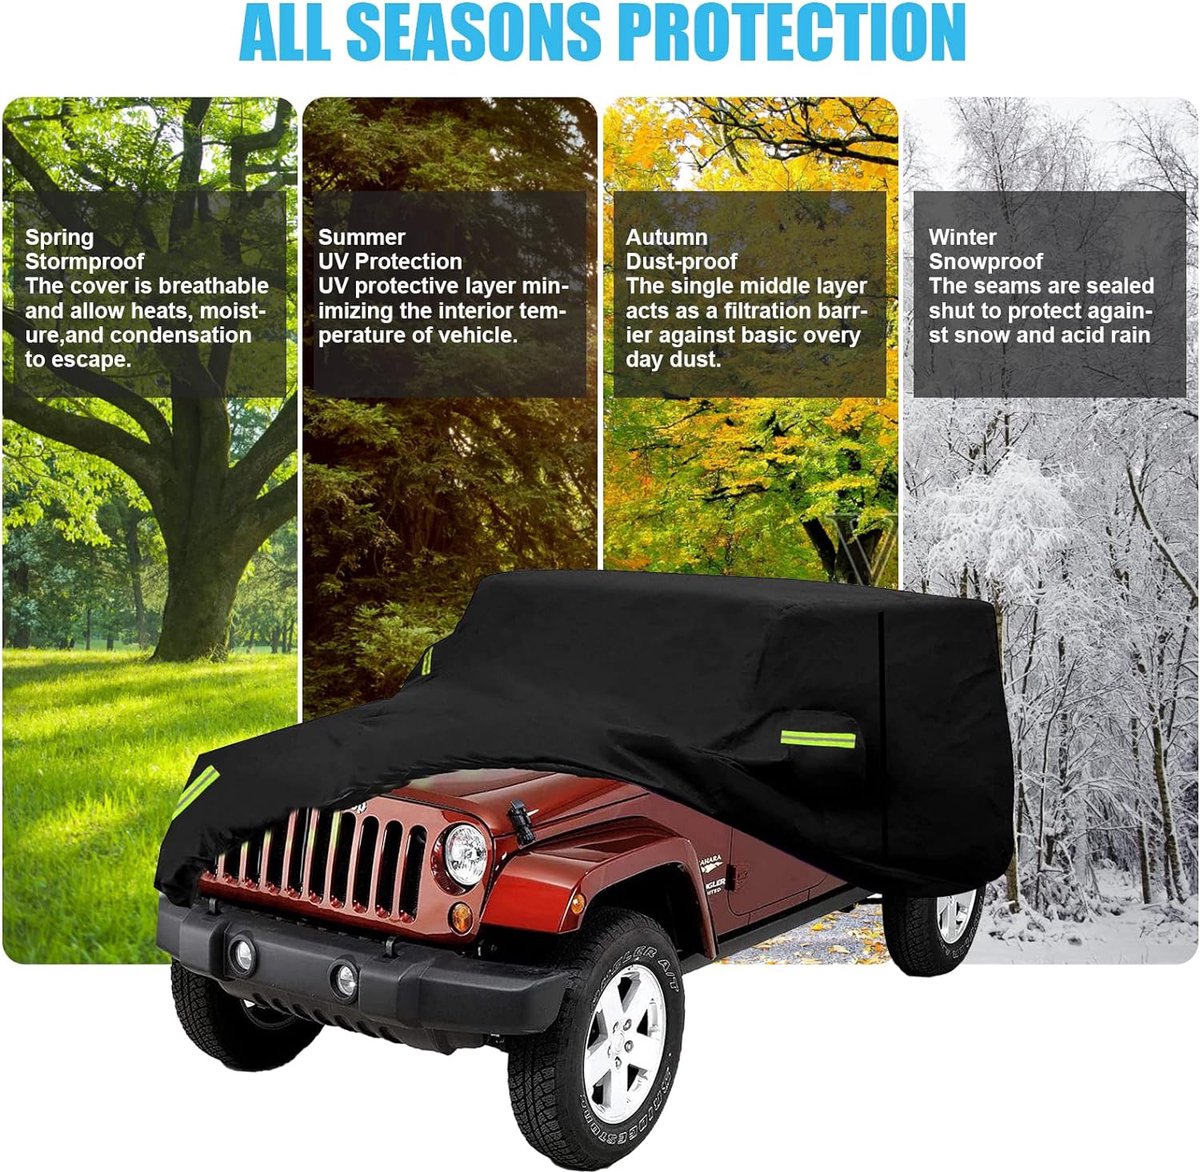 BACHE VOITURE DE PROTECTION POUR Jeep Wrangler TOUS TEMPS UV